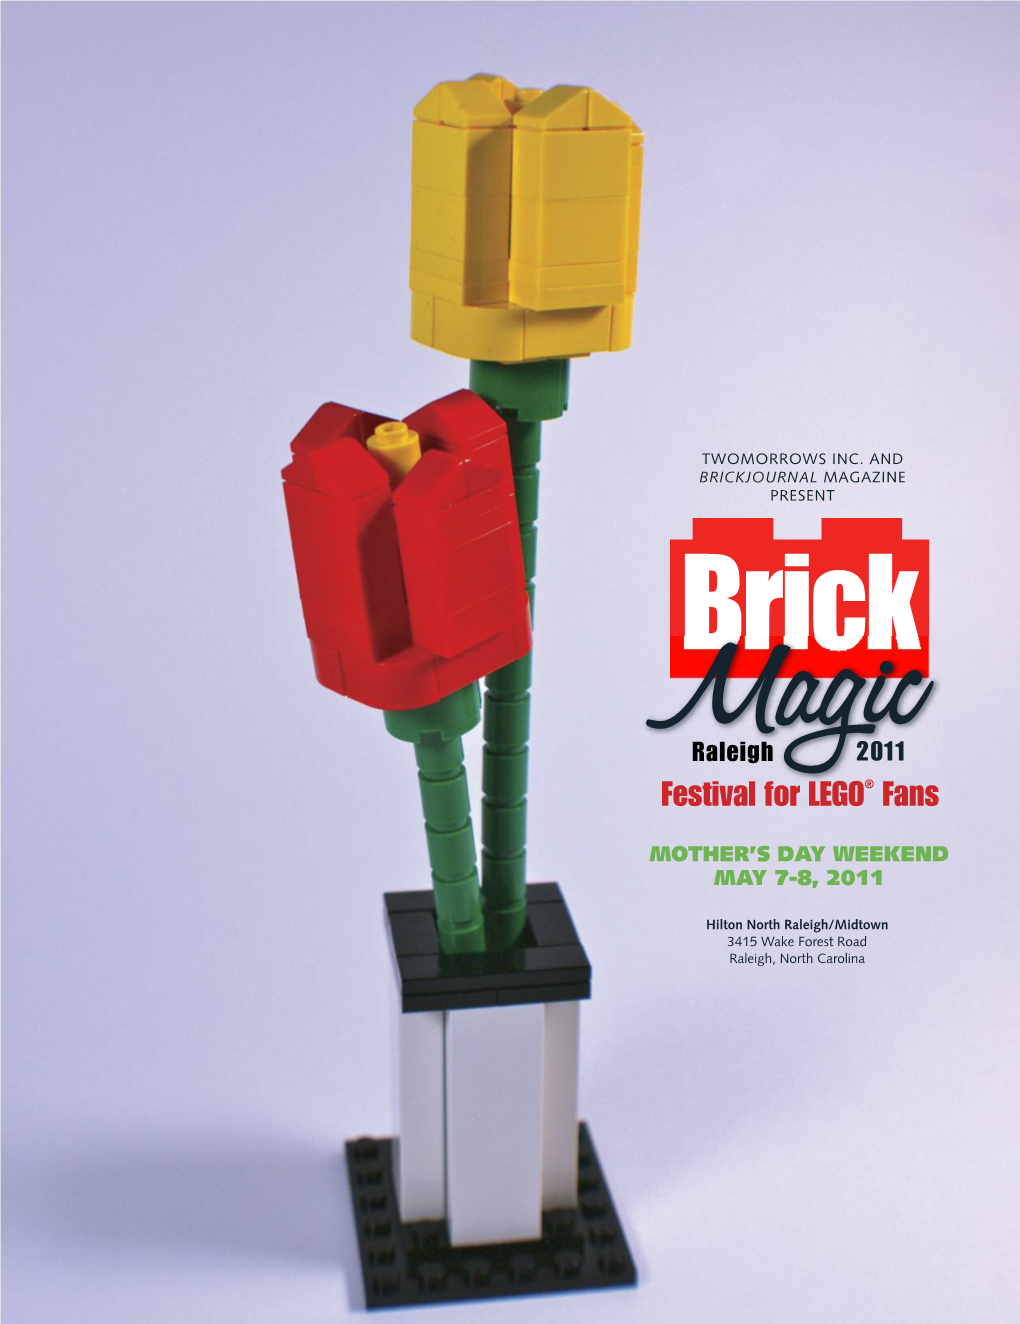 Festival for LEGO® Fans